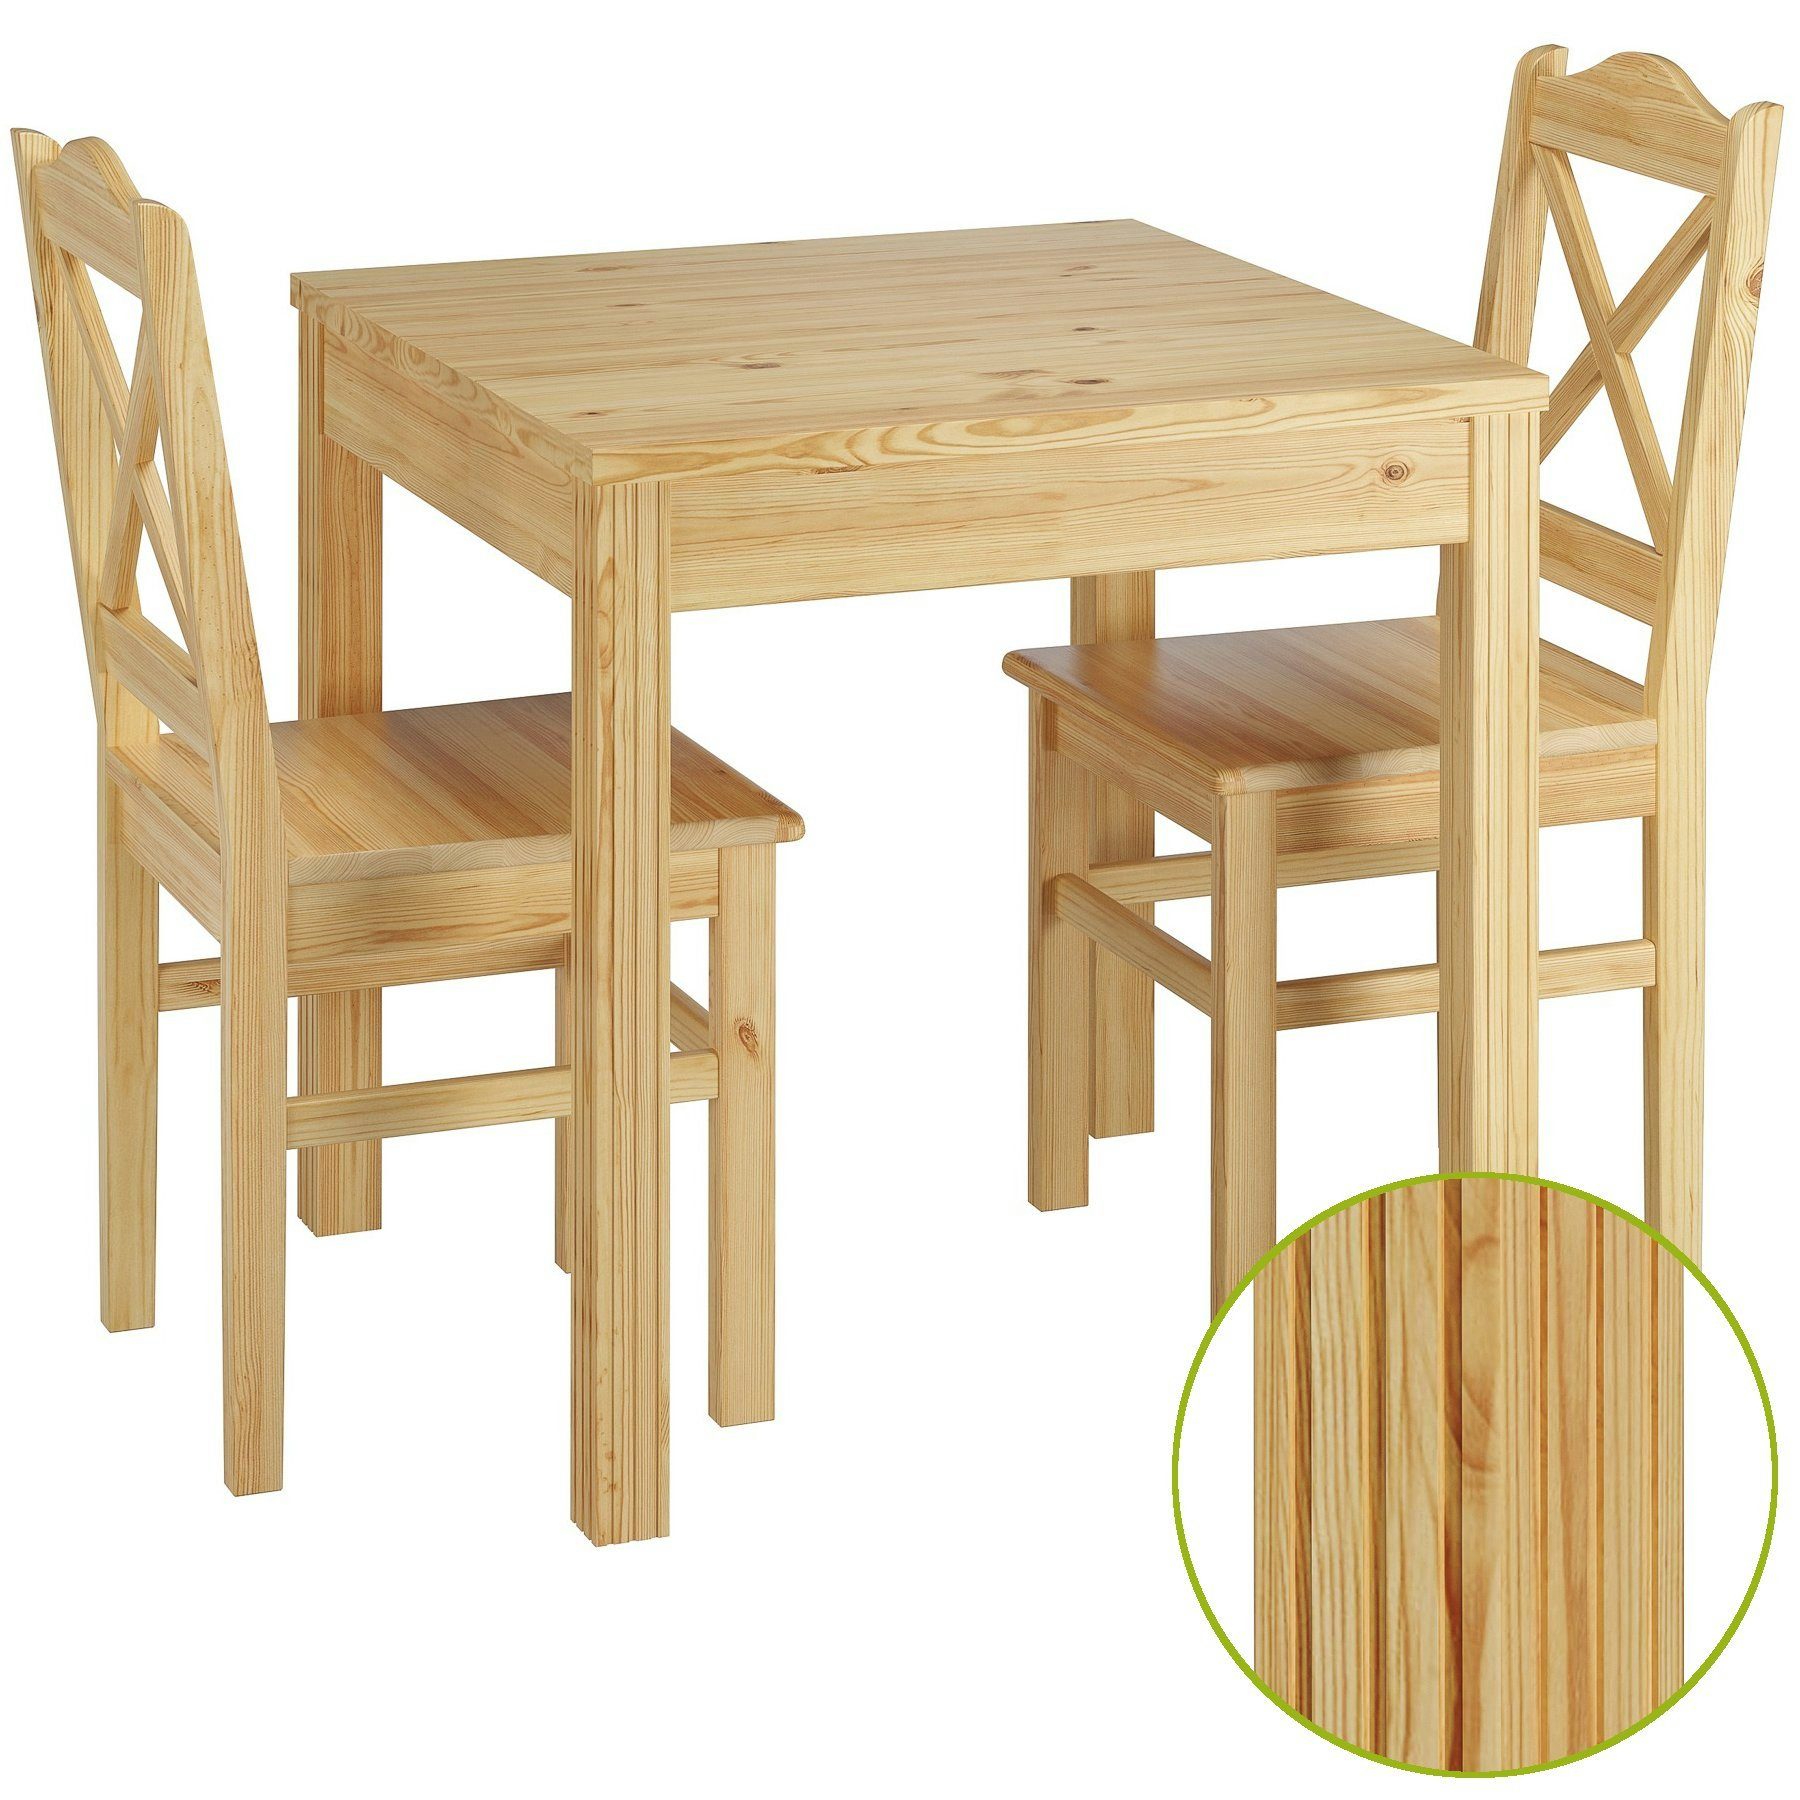 ERST-HOLZ Essgruppe Esszimmergruppe mit Tisch und 2 Stühle Kiefer natur Massivholz